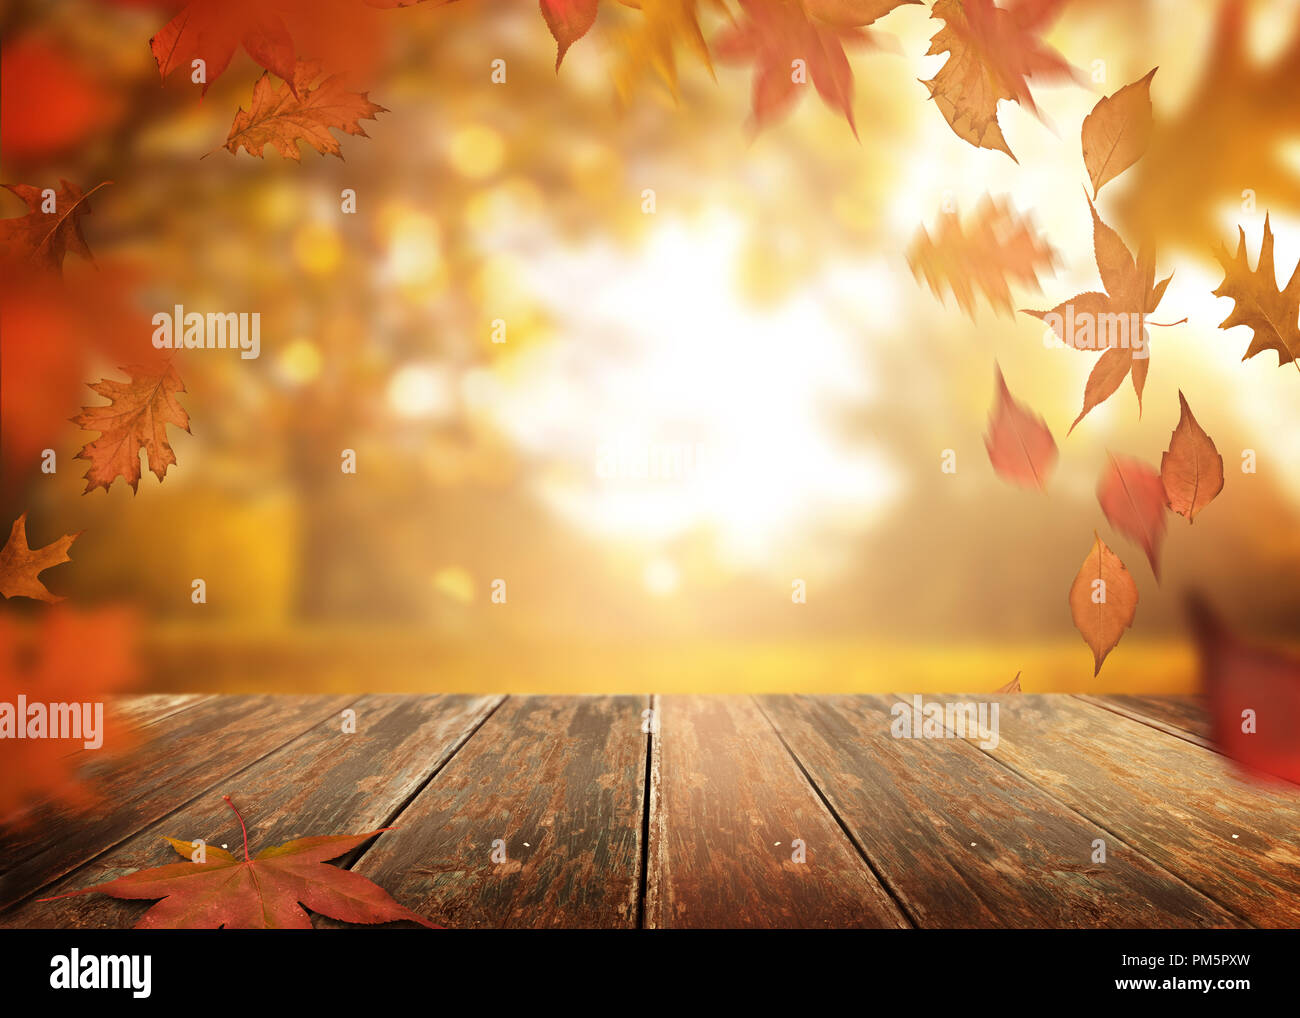 Herbst Jahreszeit mit fallenden Baum Blätter und ein holztisch Hintergrund. Stockfoto